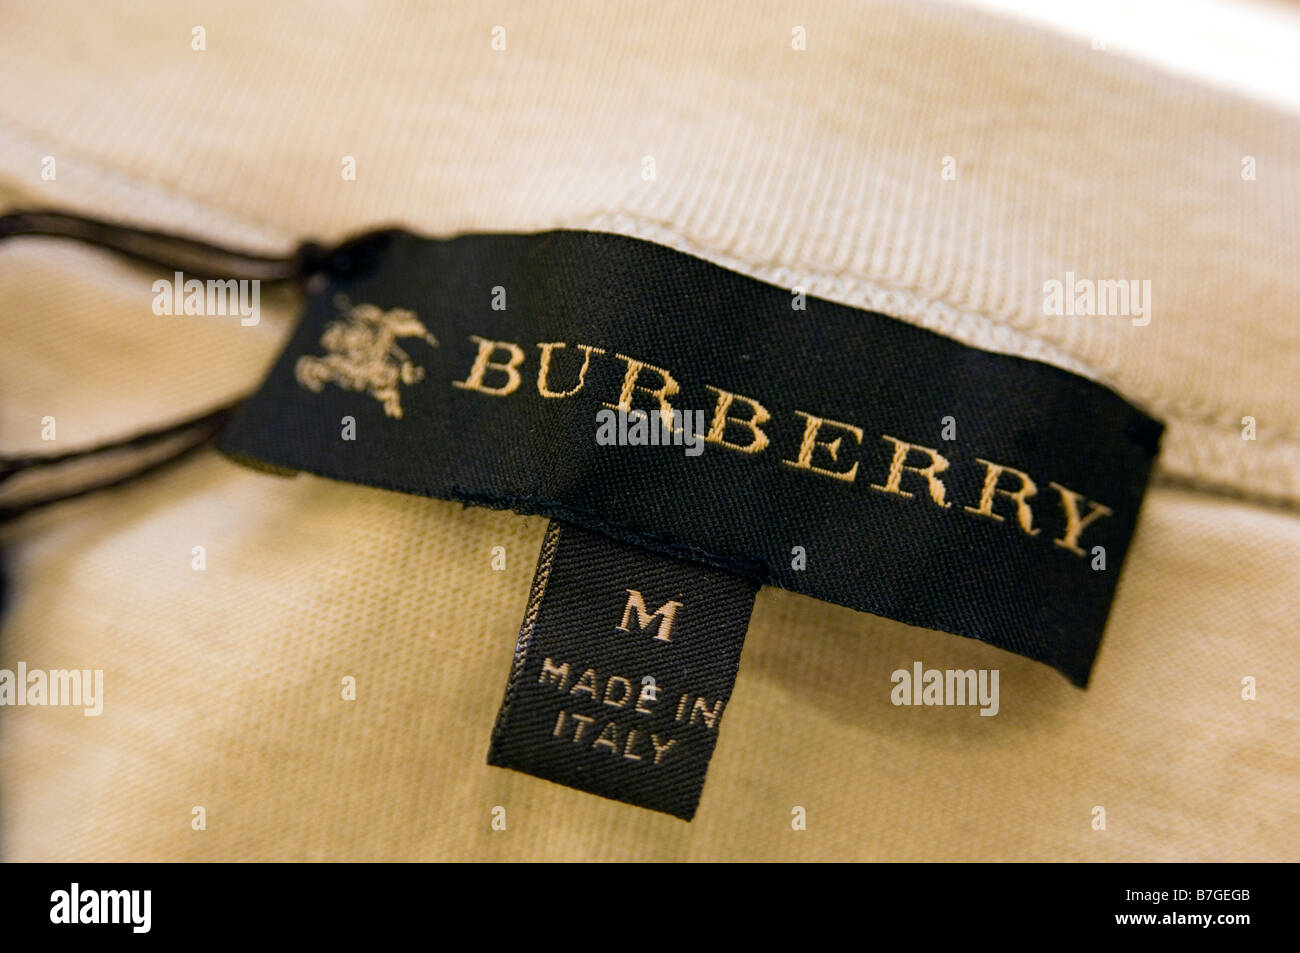 Burberry Stock Photo